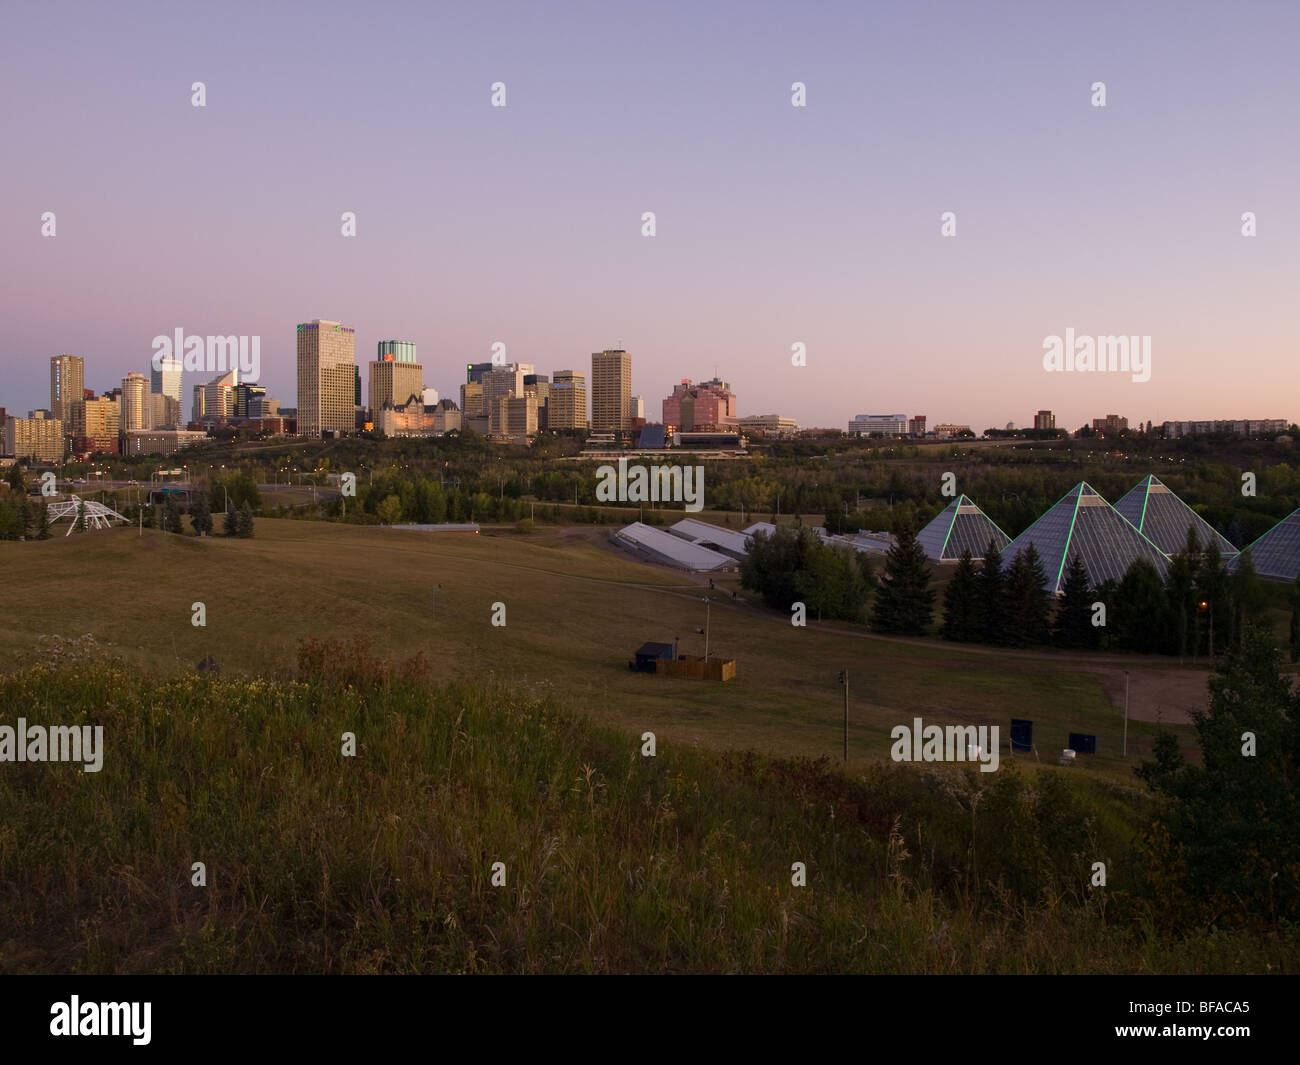 Lo skyline del centro di Edmonton, Alberta, Canada con le piramidi di Muttart Conservatory in primo piano. Foto Stock